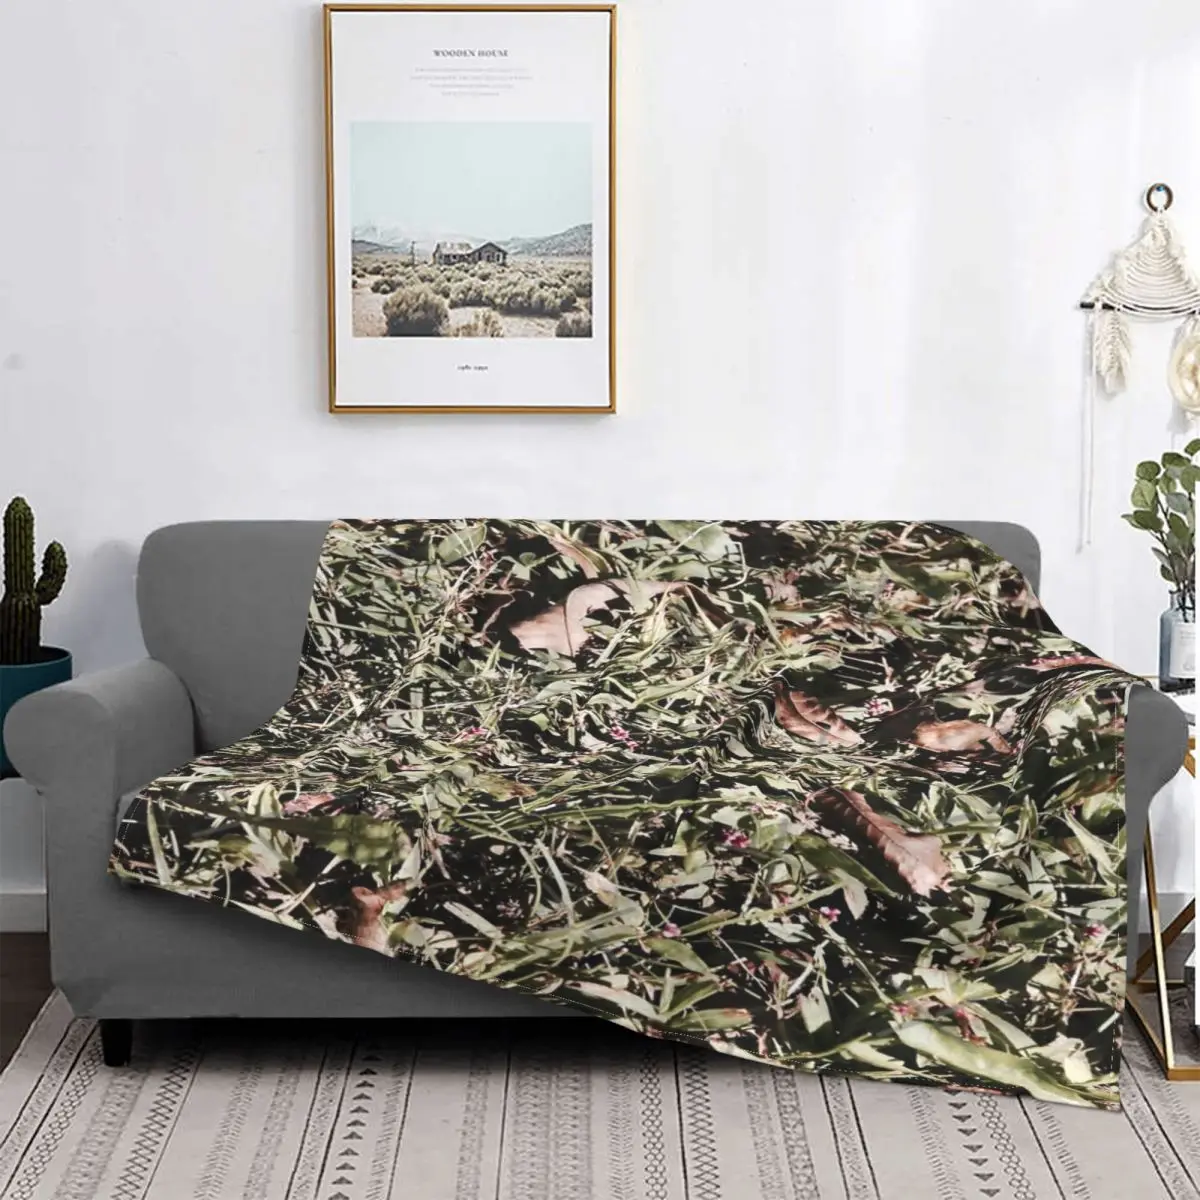 

Manta de hojas en el suelo, para cama colcha, manta de muselina a cuadros para sofra, edredones y colcha